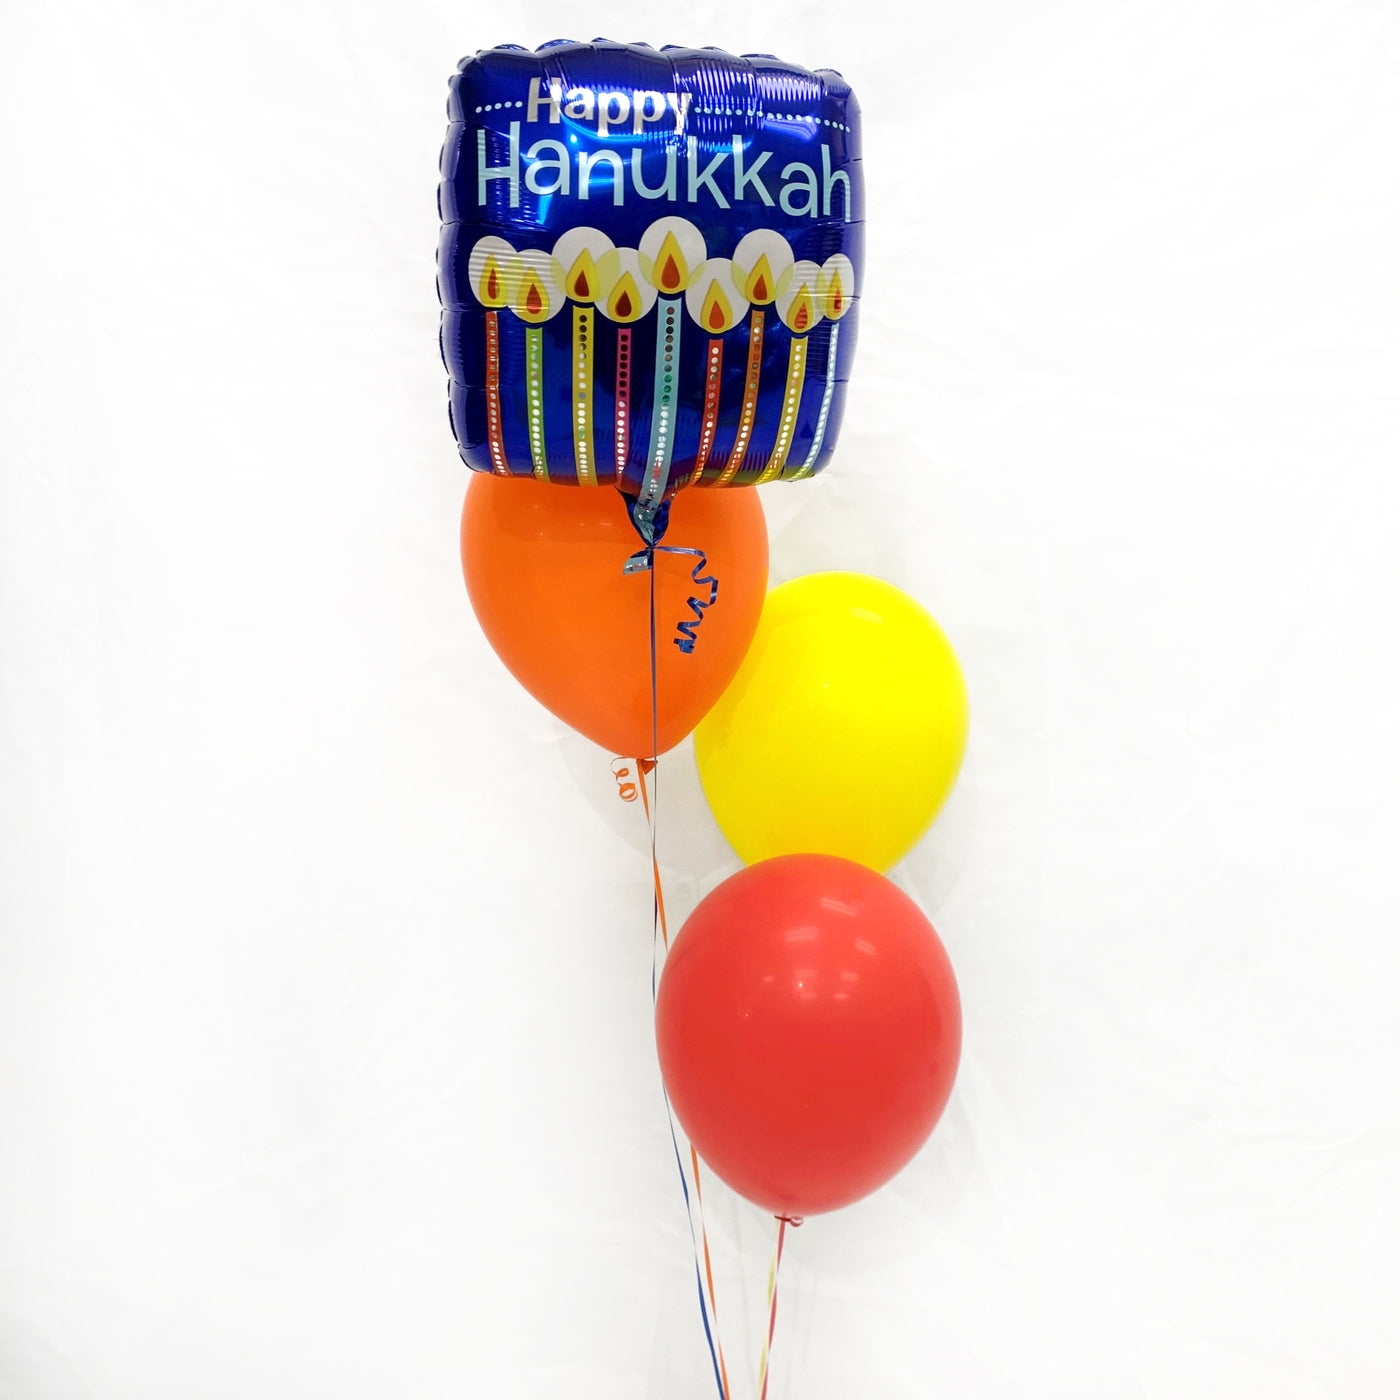 Hanukkah Balloon bouquet